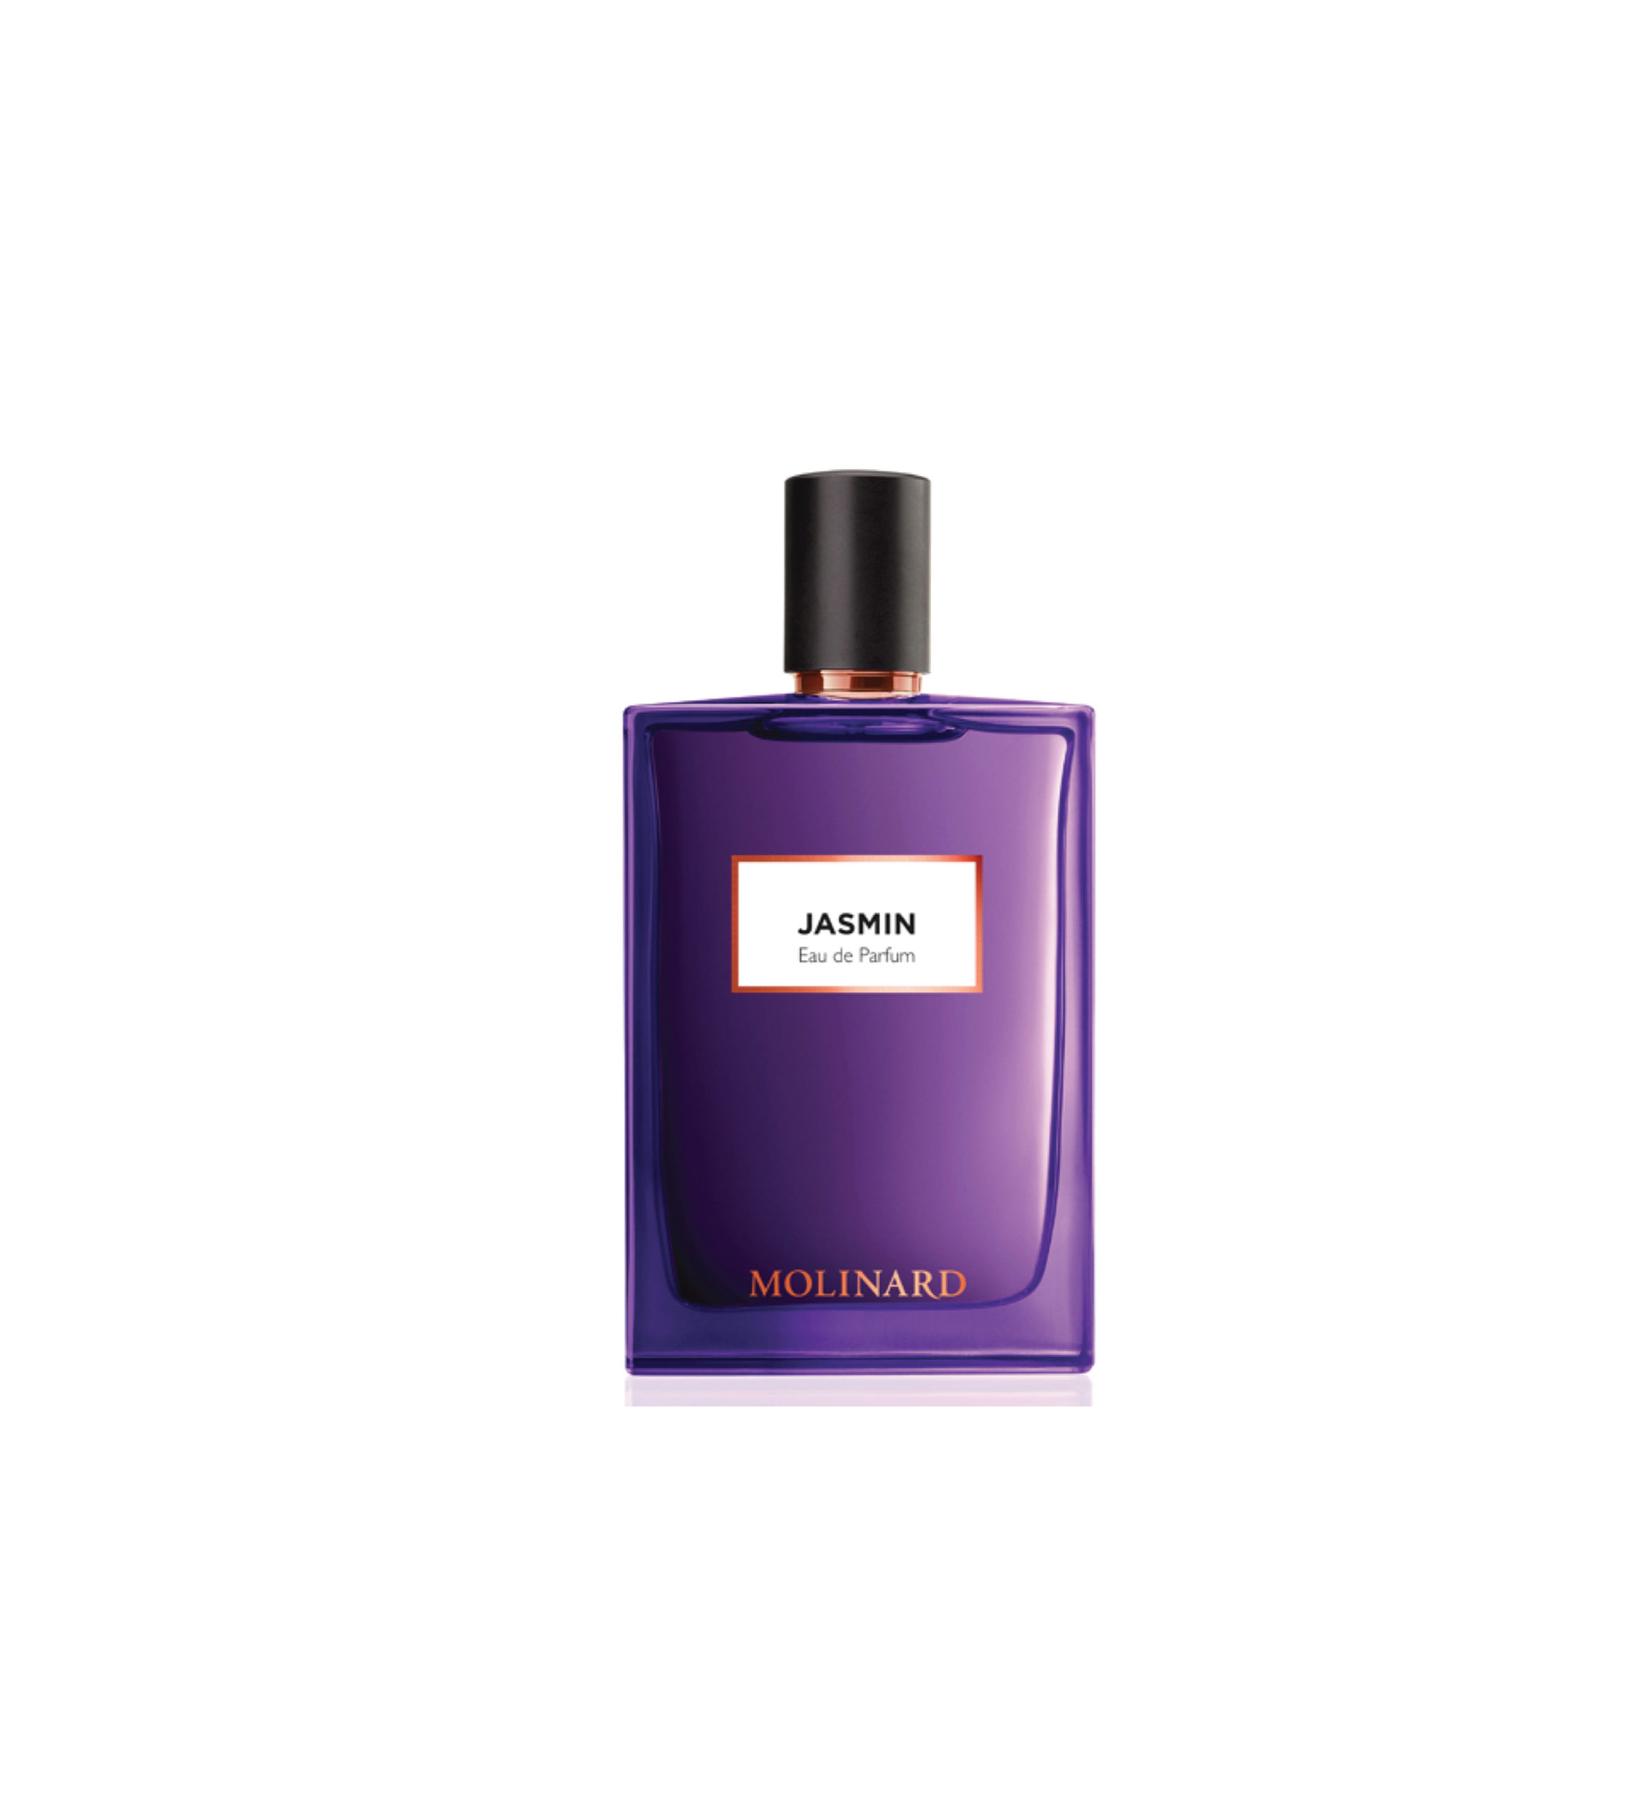 MOLINARD Unisex parfem Jasmin 75ml